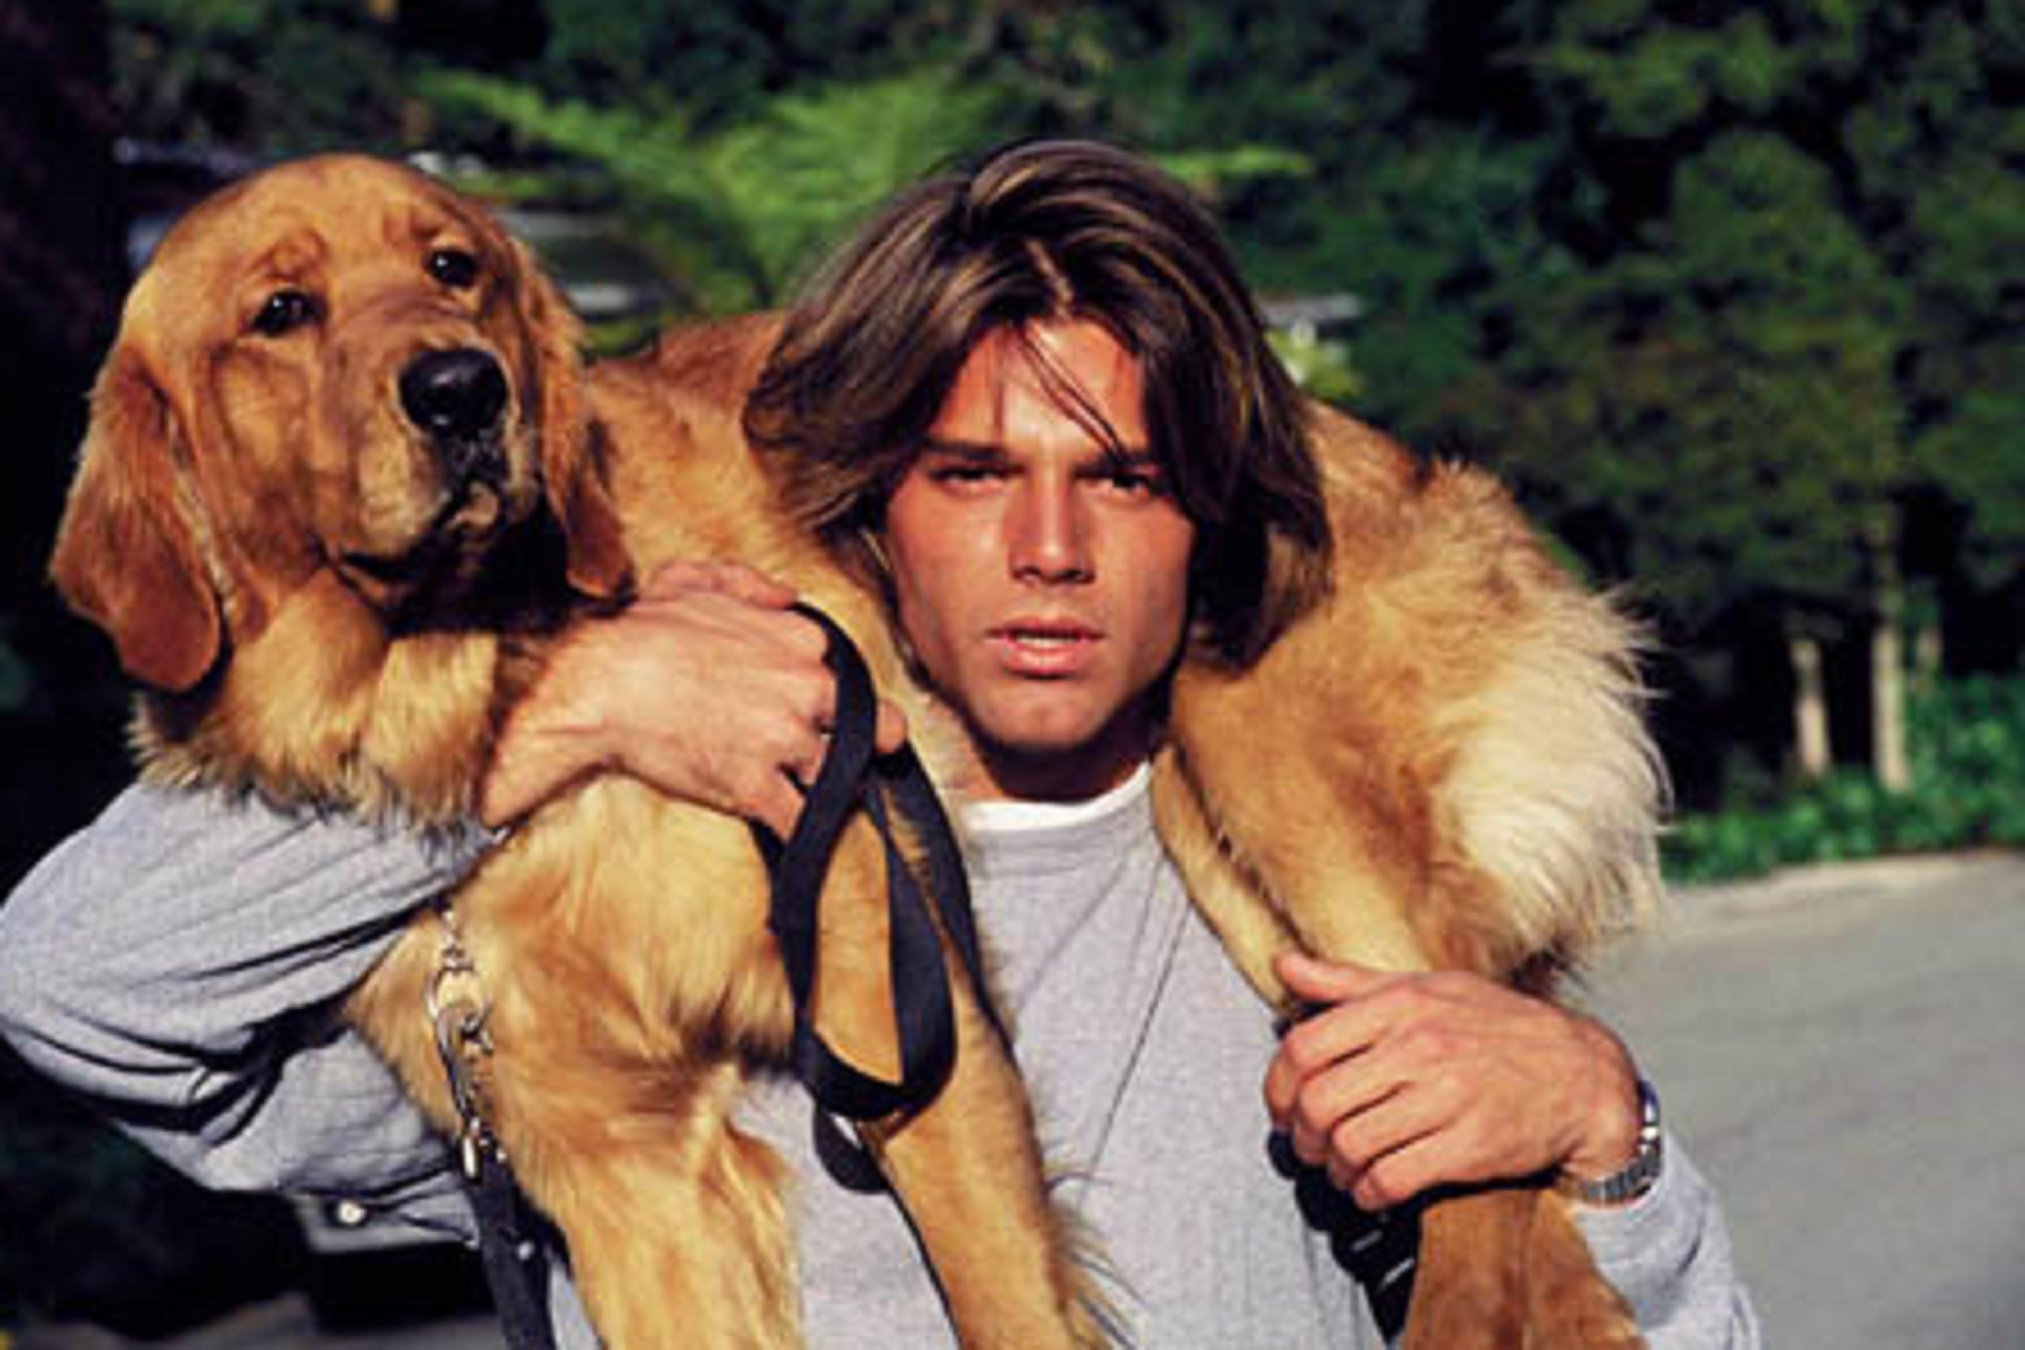 Veinte años de la fake new más brutal: Ricky Martin, mermelada y un perro